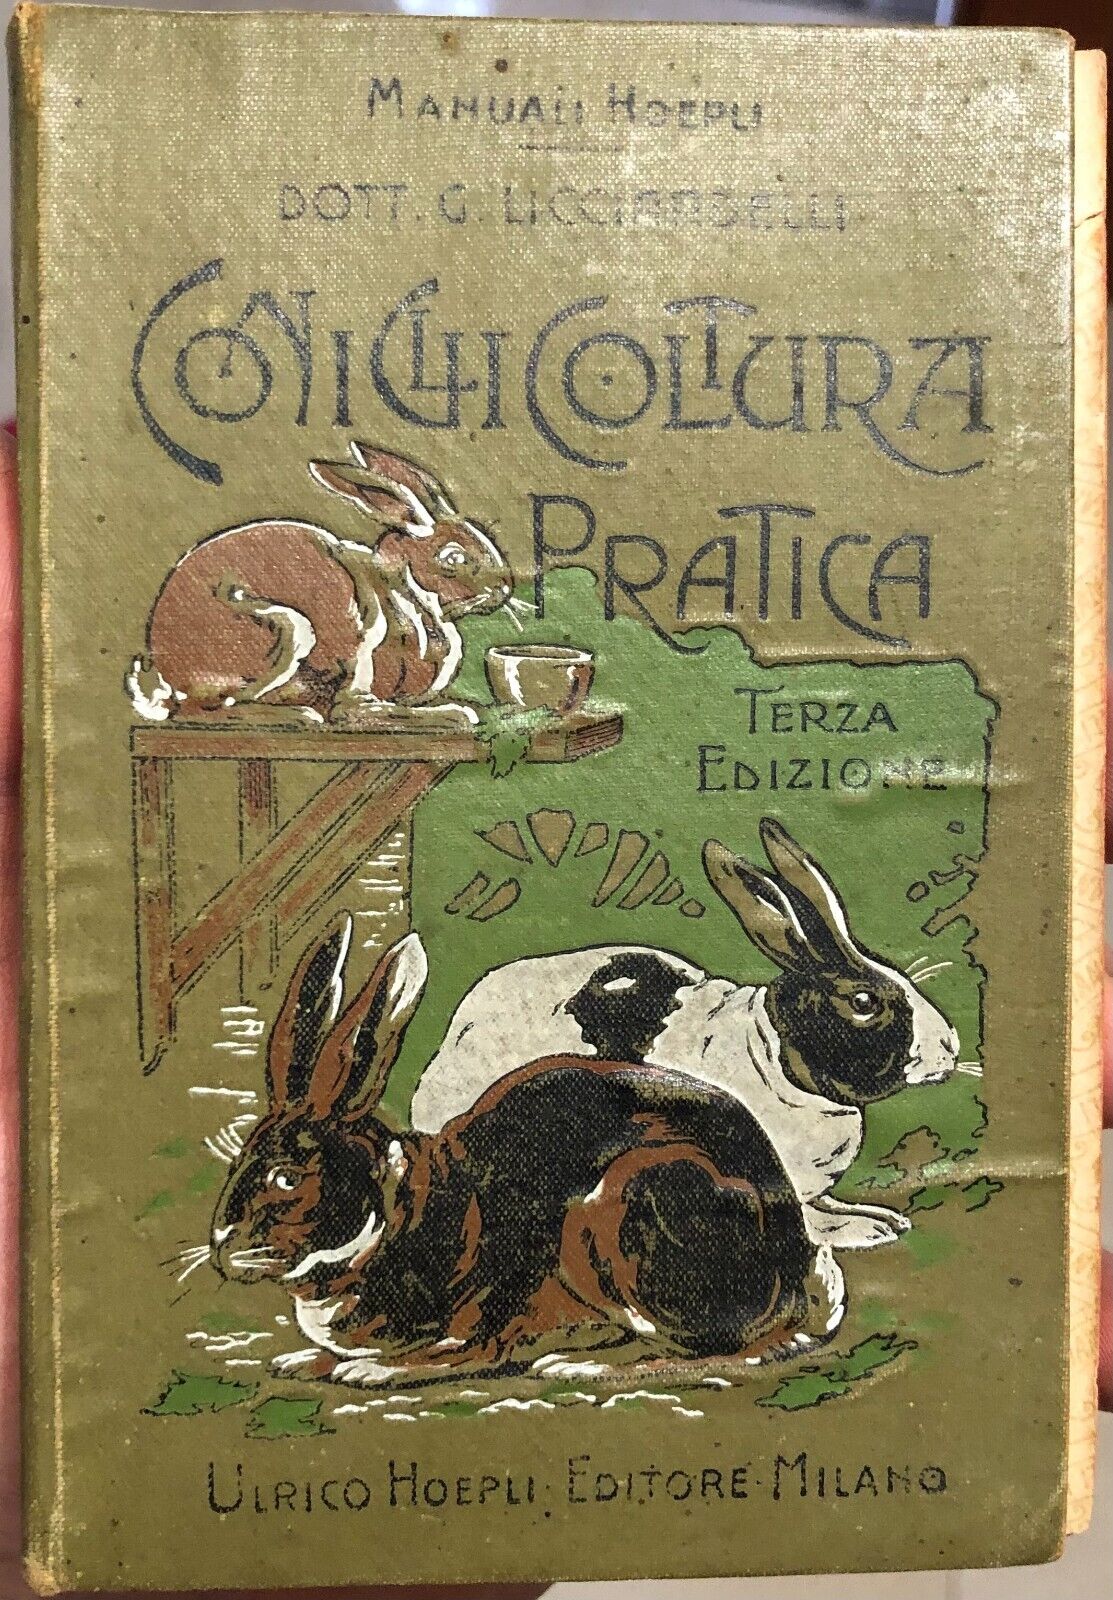  Conigliocoltura pratica. Terza Edizione di Dott. G. Licciardelli, 1907, Ulri